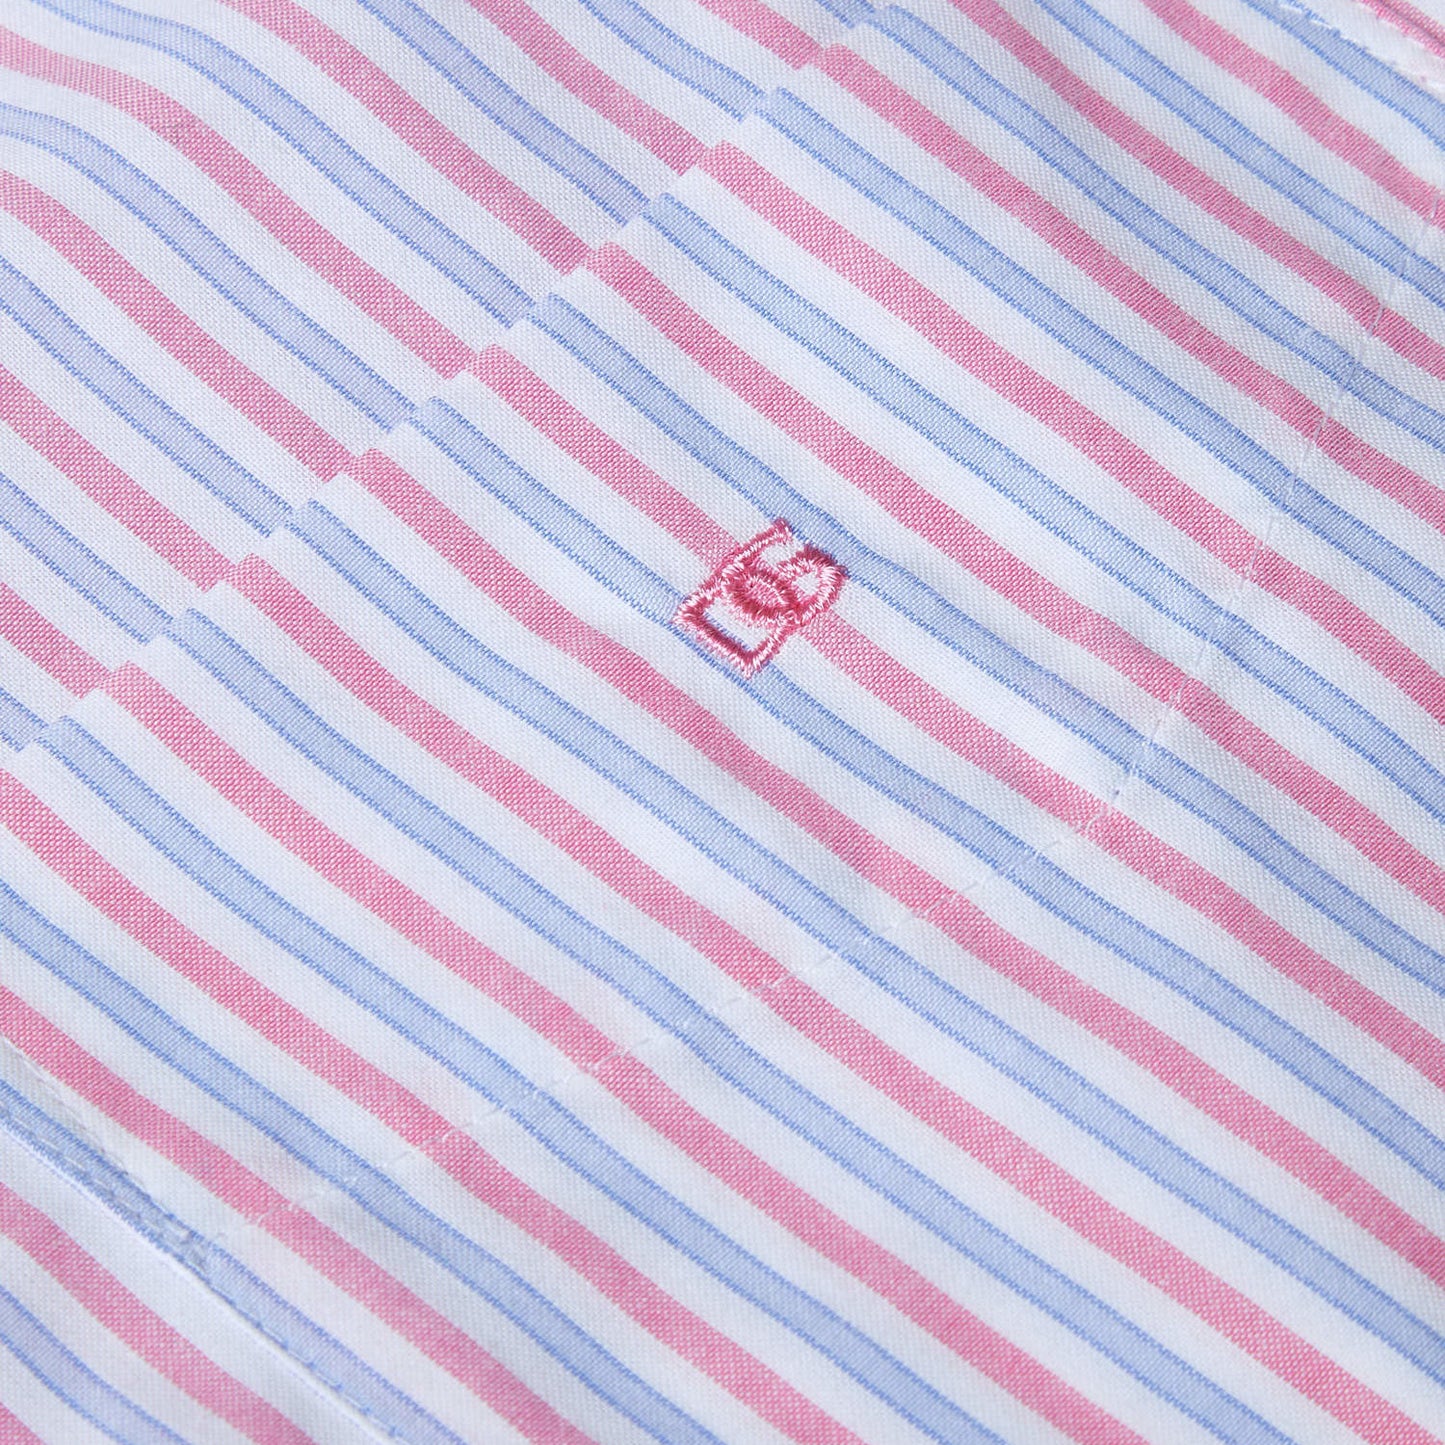 Drifter 14436SS 16 Pink Regular/Ivano Short Sleeve Casual Shirt